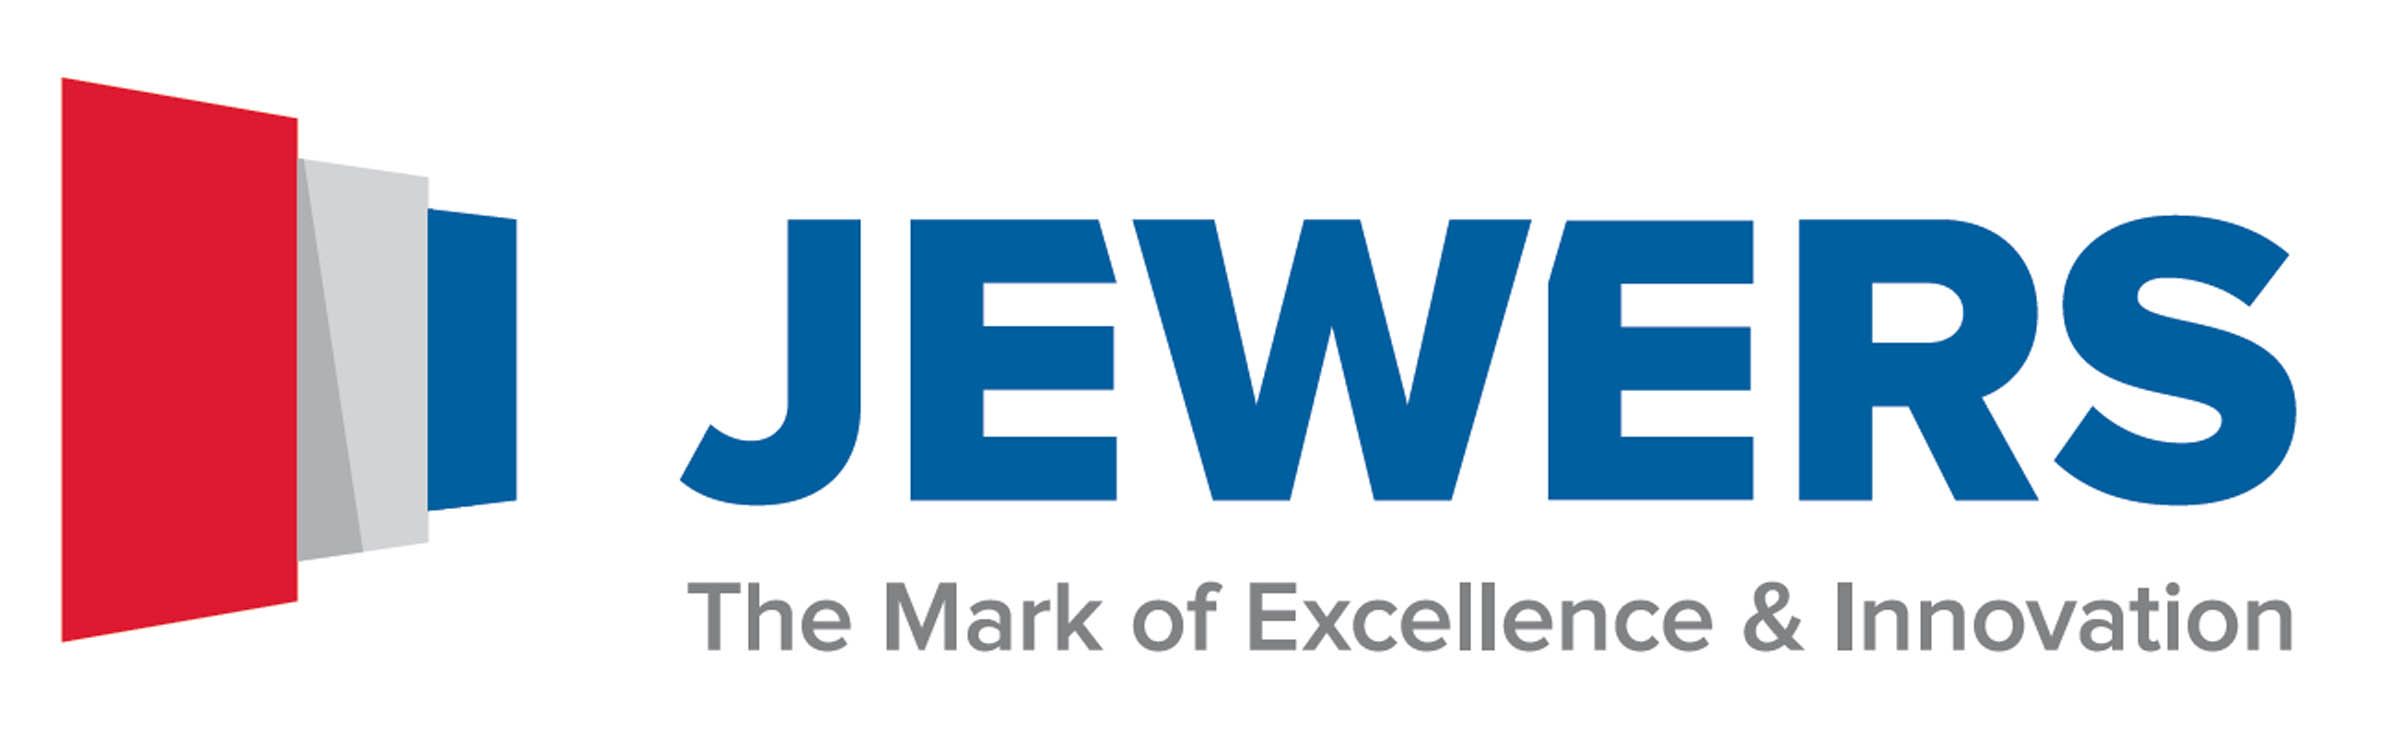 Jewers Doors Logo